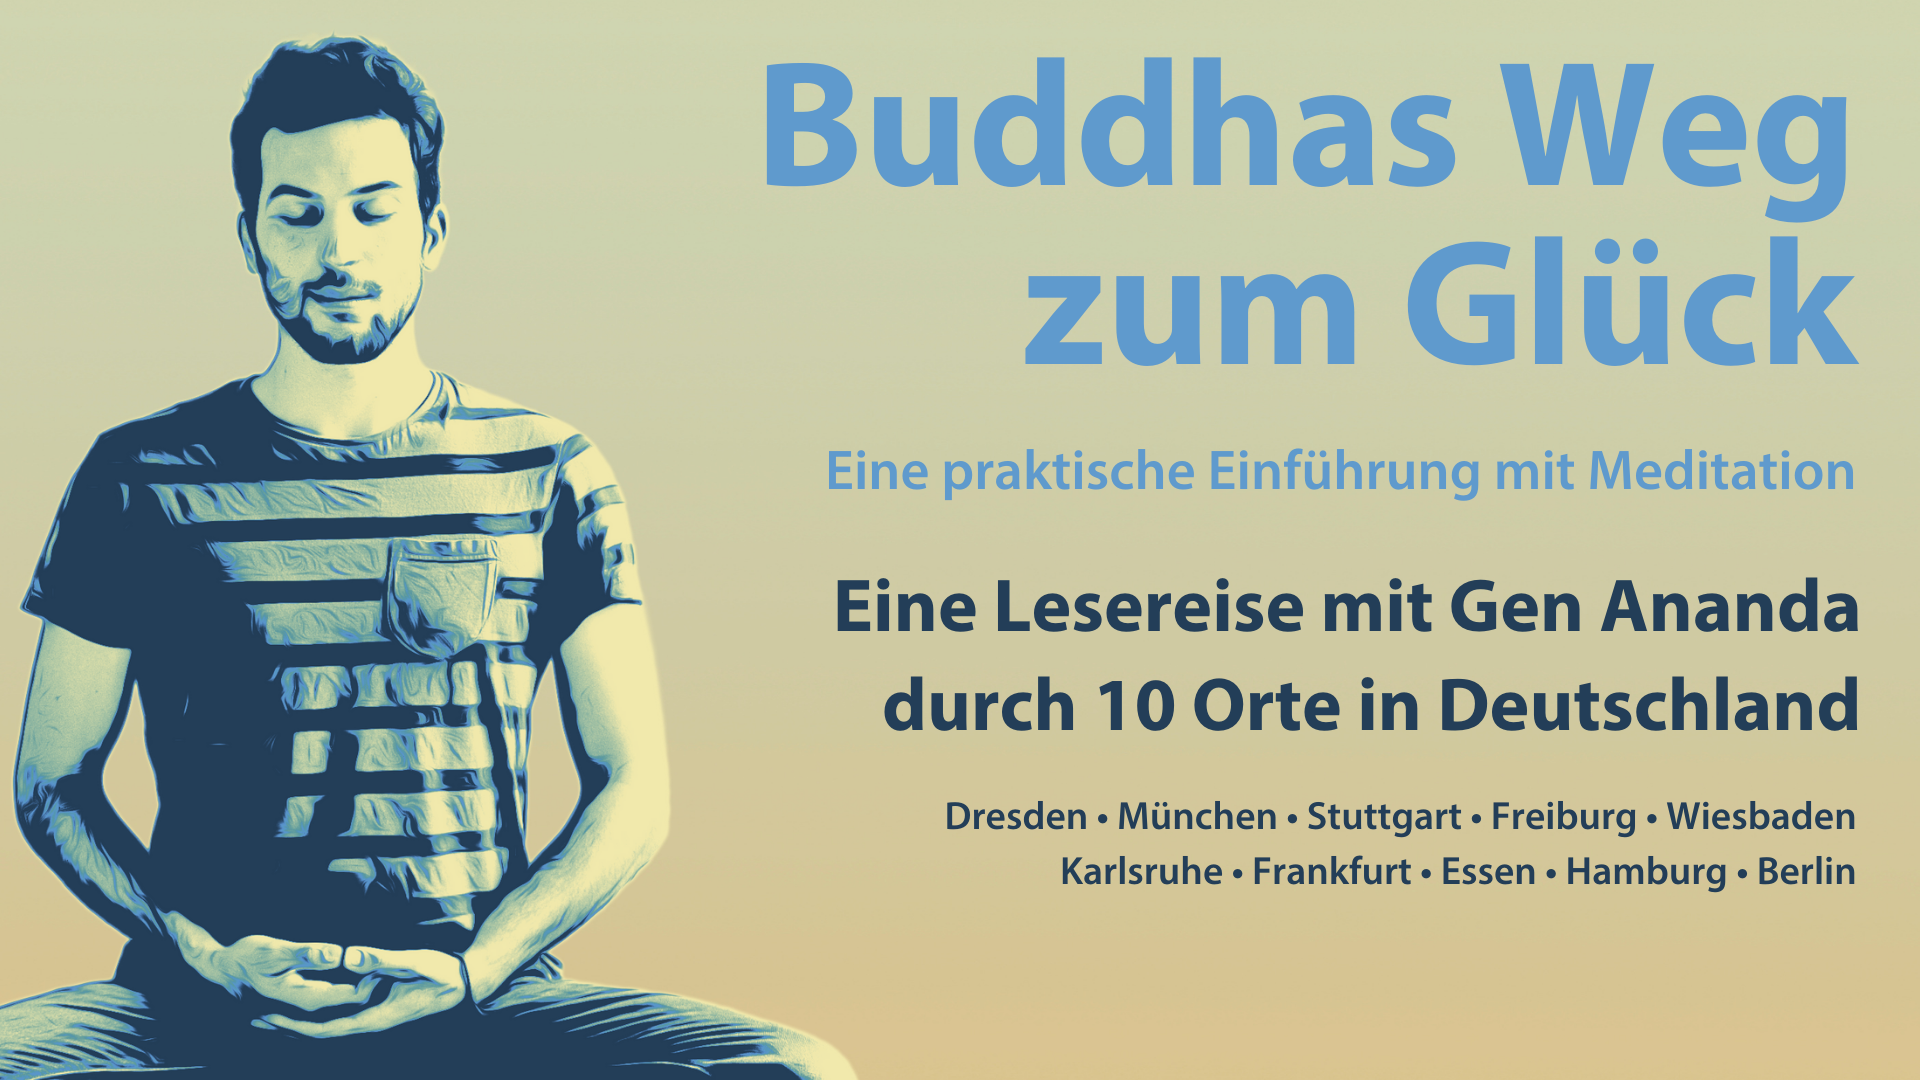 Ten German cities meet Kadam Dharma